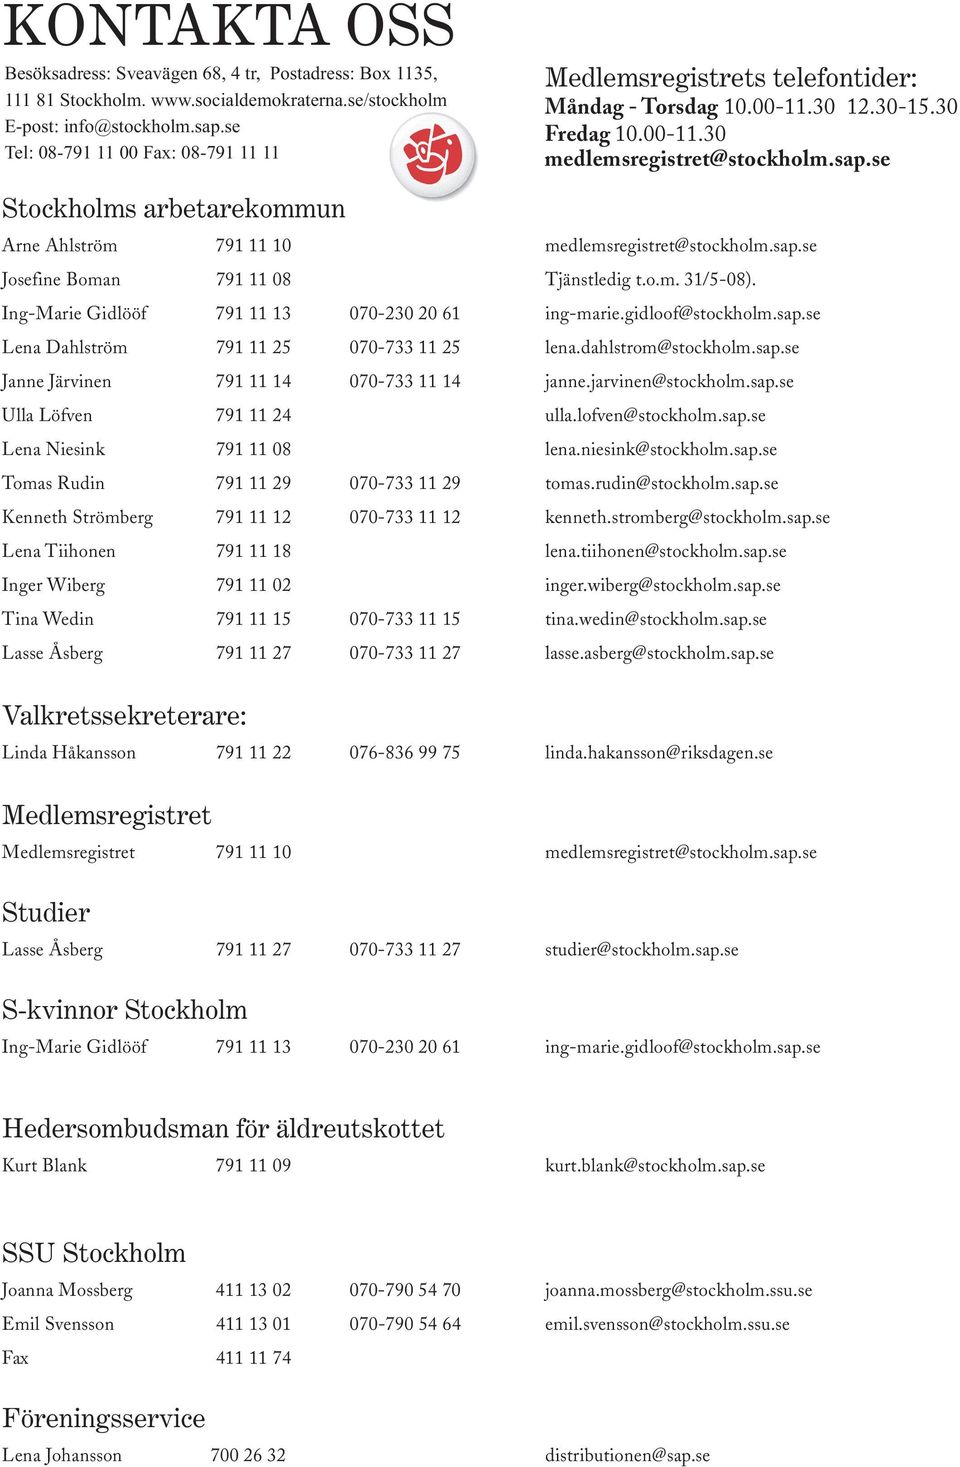 se Stockholms arbetarekommun Arne Ahlström 791 11 10 medlemsregistret@stockholm.sap.se Josefine Boman 791 11 08 Tjänstledig t.o.m. 31/5-08). Ing-Marie Gidlööf 791 11 13 070-230 20 61 ing-marie.